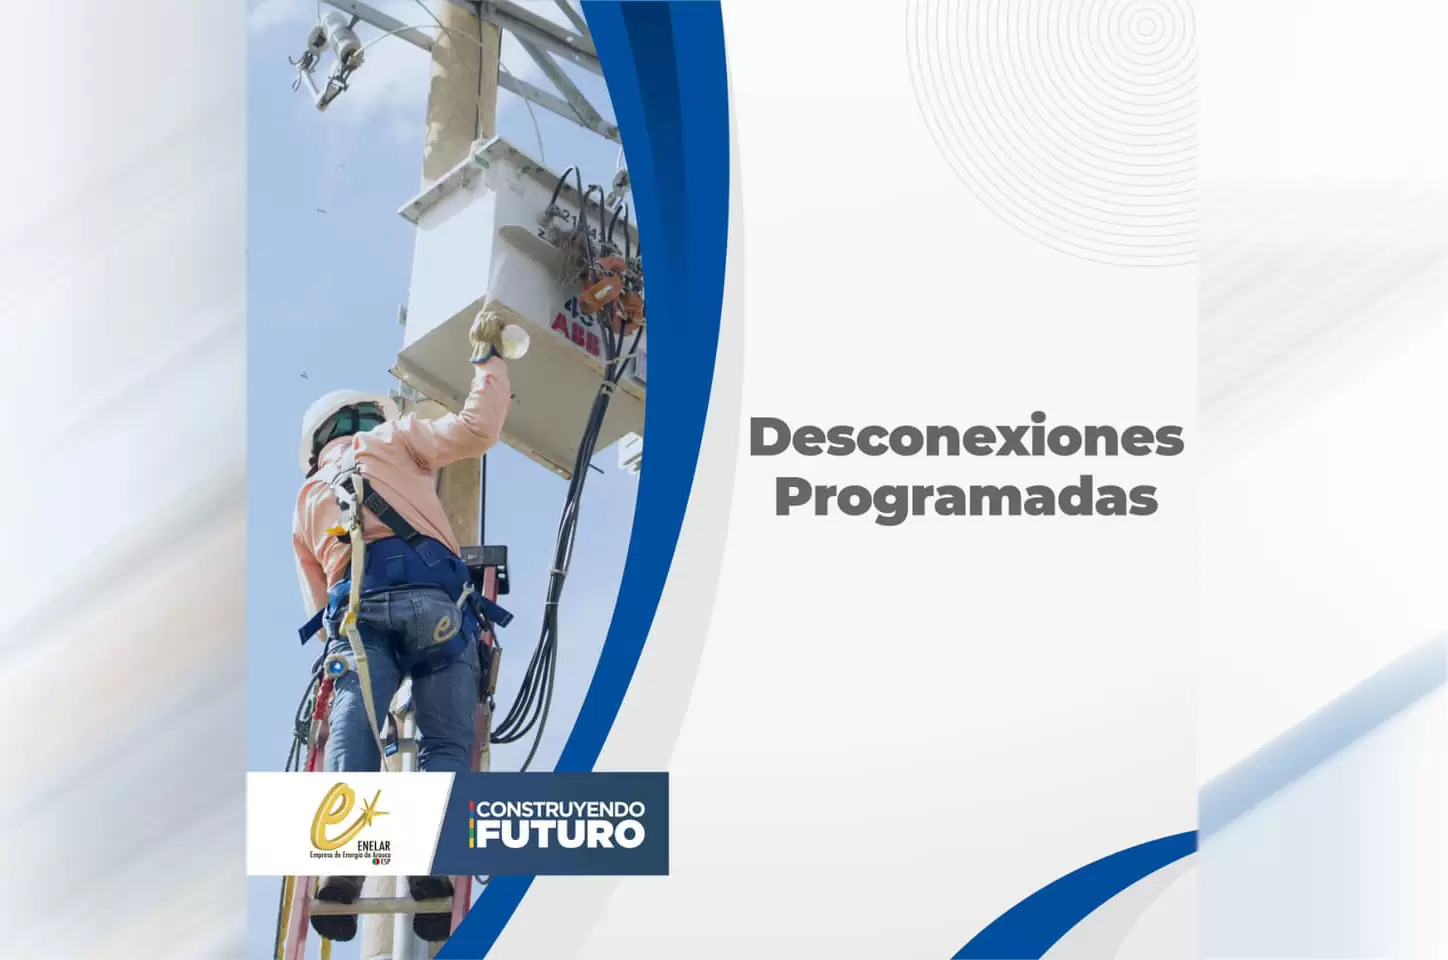 Desconexiones programadas en las redes eléctricas del municipio de Saravena